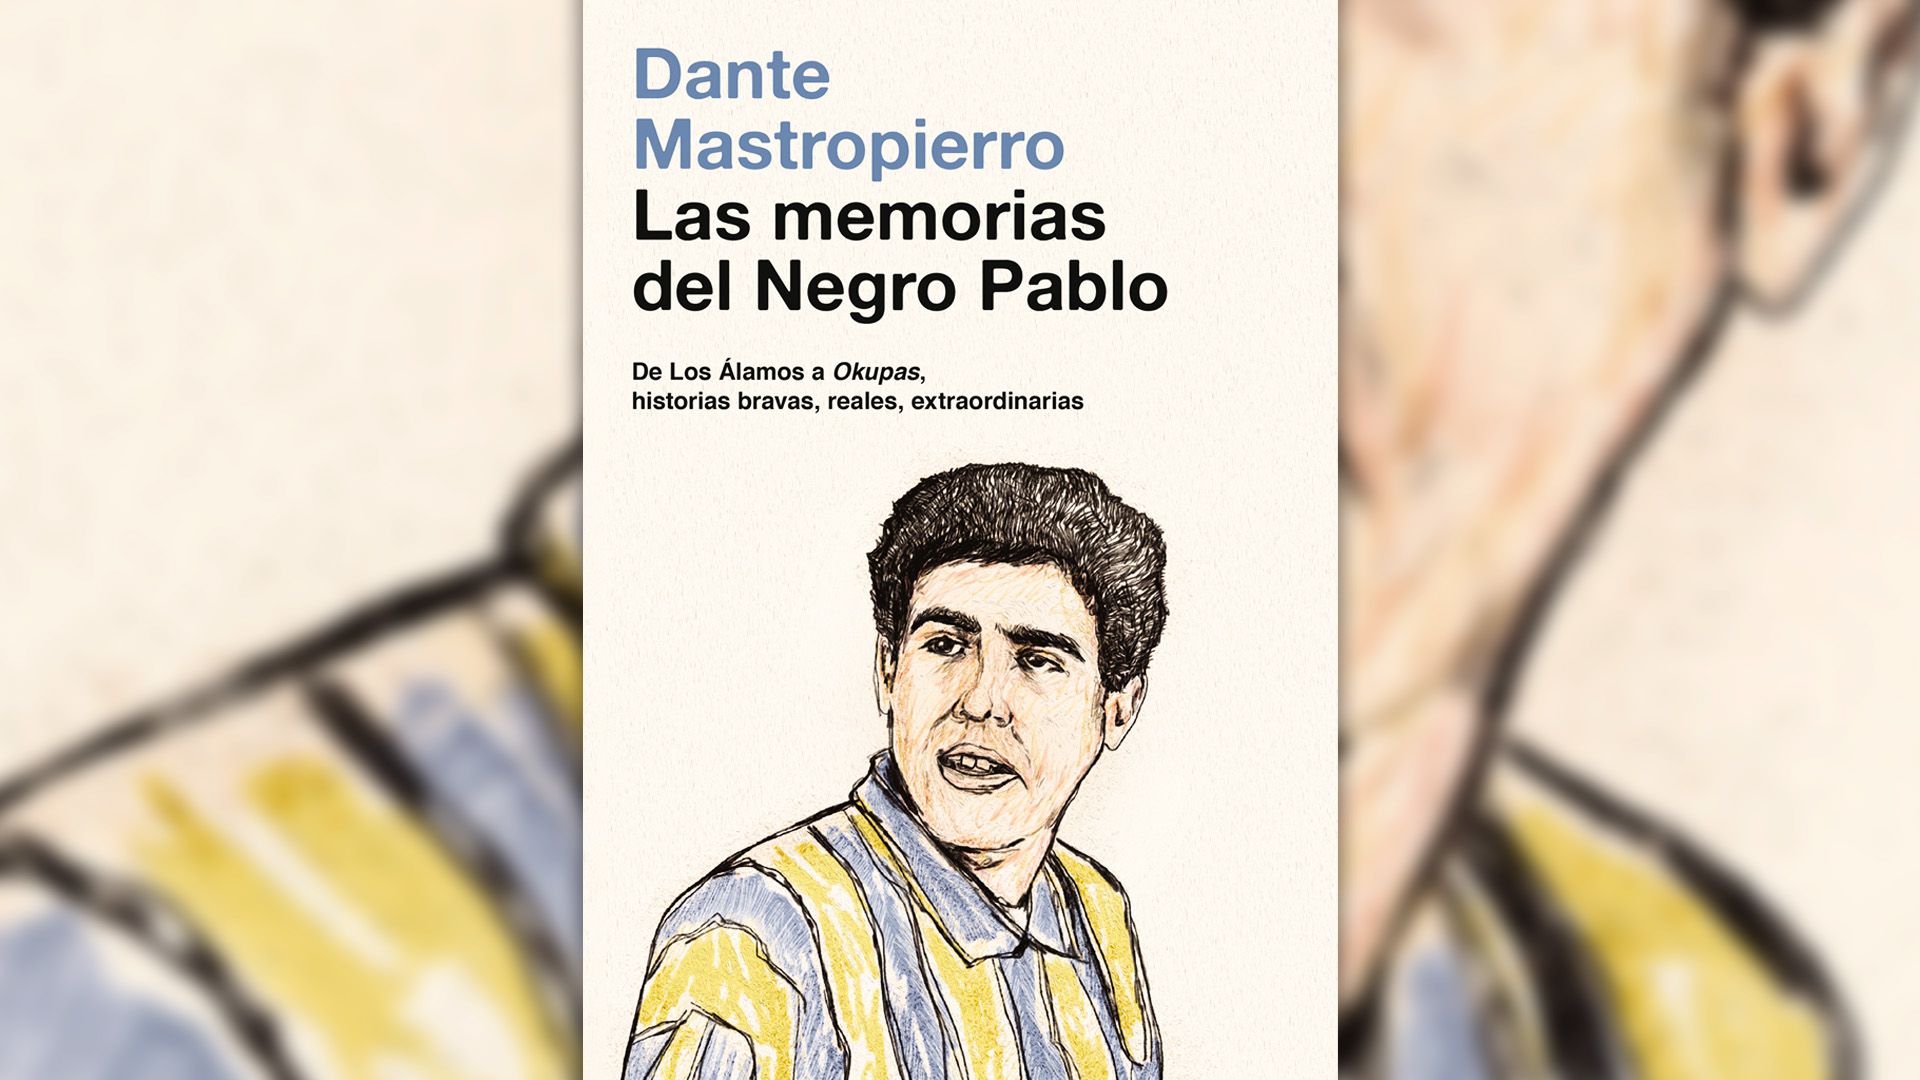 “Las memorias del negro Pablo”: El libro de Dante Mastropierro será presentado el próximo jueves por Leo Oyola